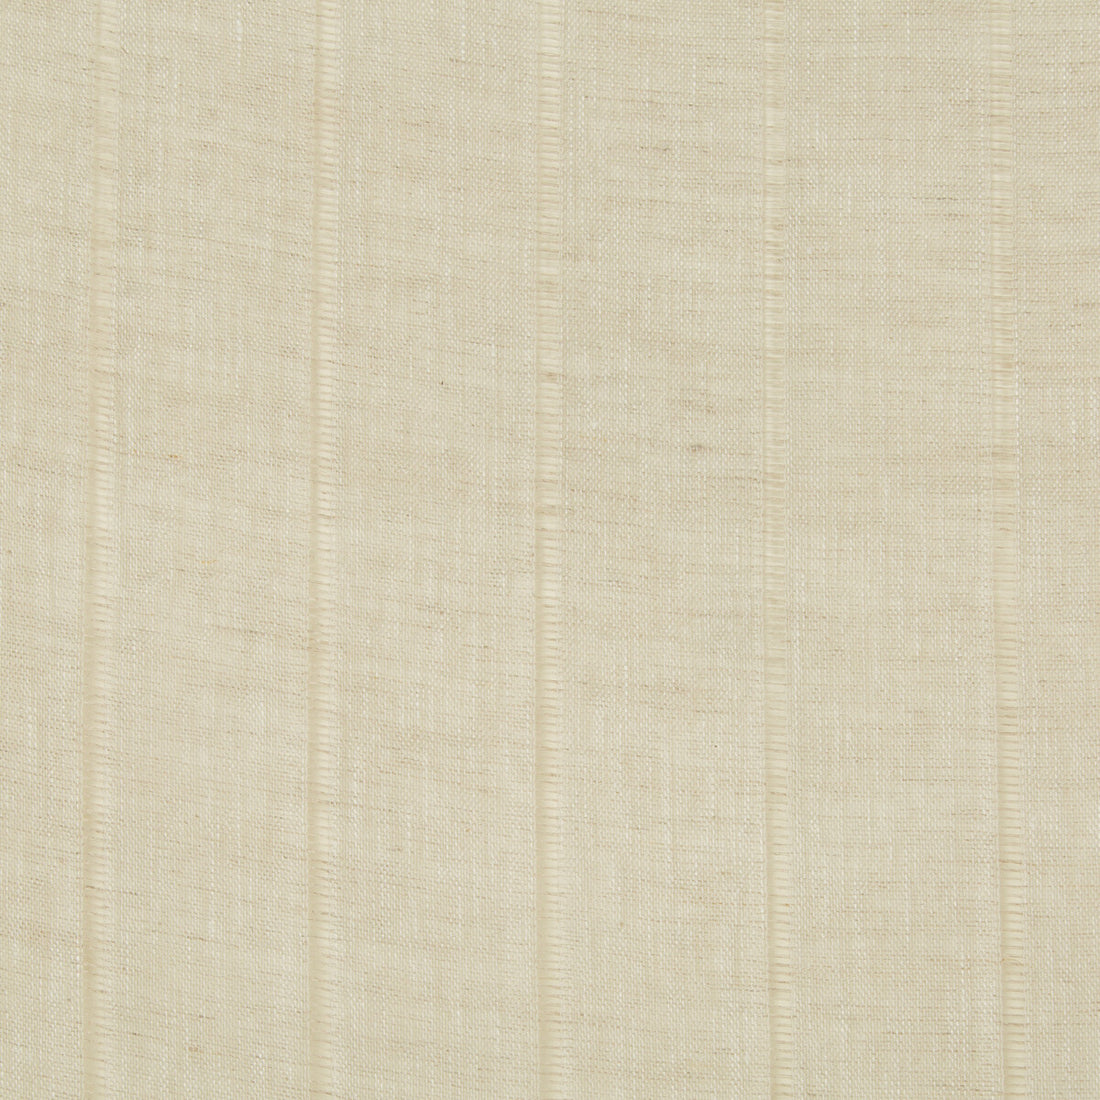 Kravet Basics fabric in 4064-16 color - pattern 4064.16.0 - by Kravet Basics